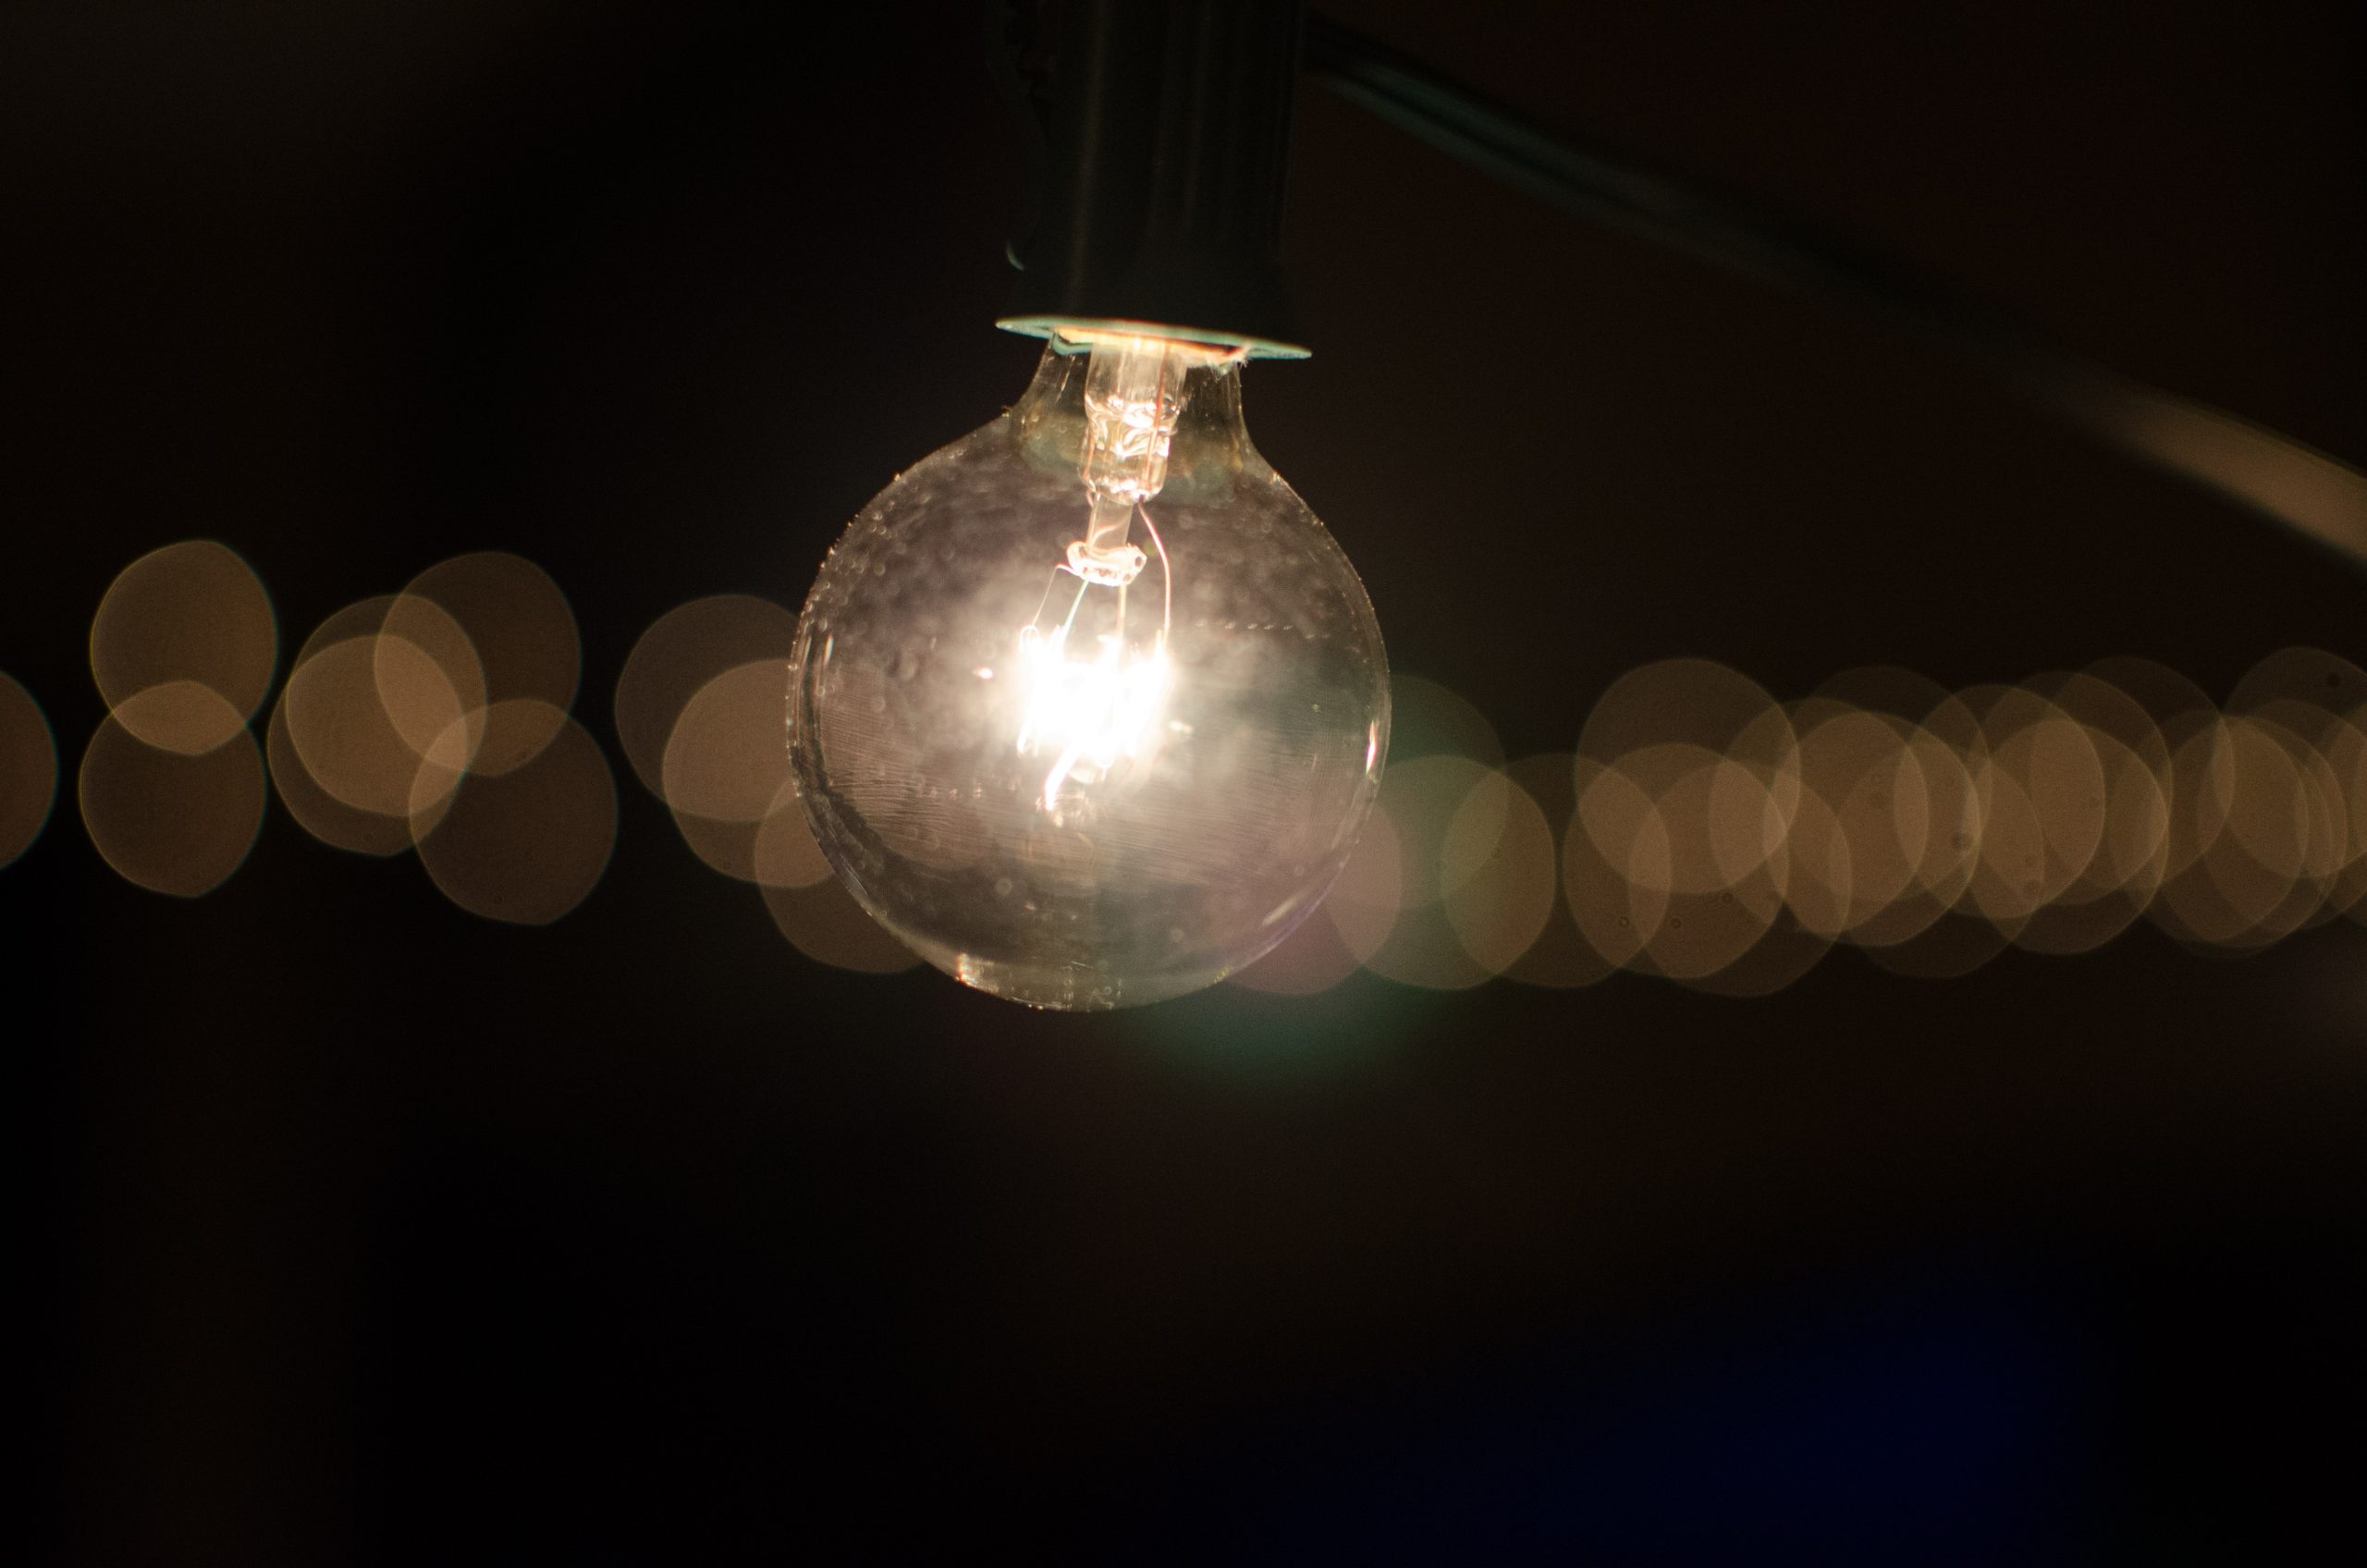 Fotografia di una lampadina accesa in un contesto di buio